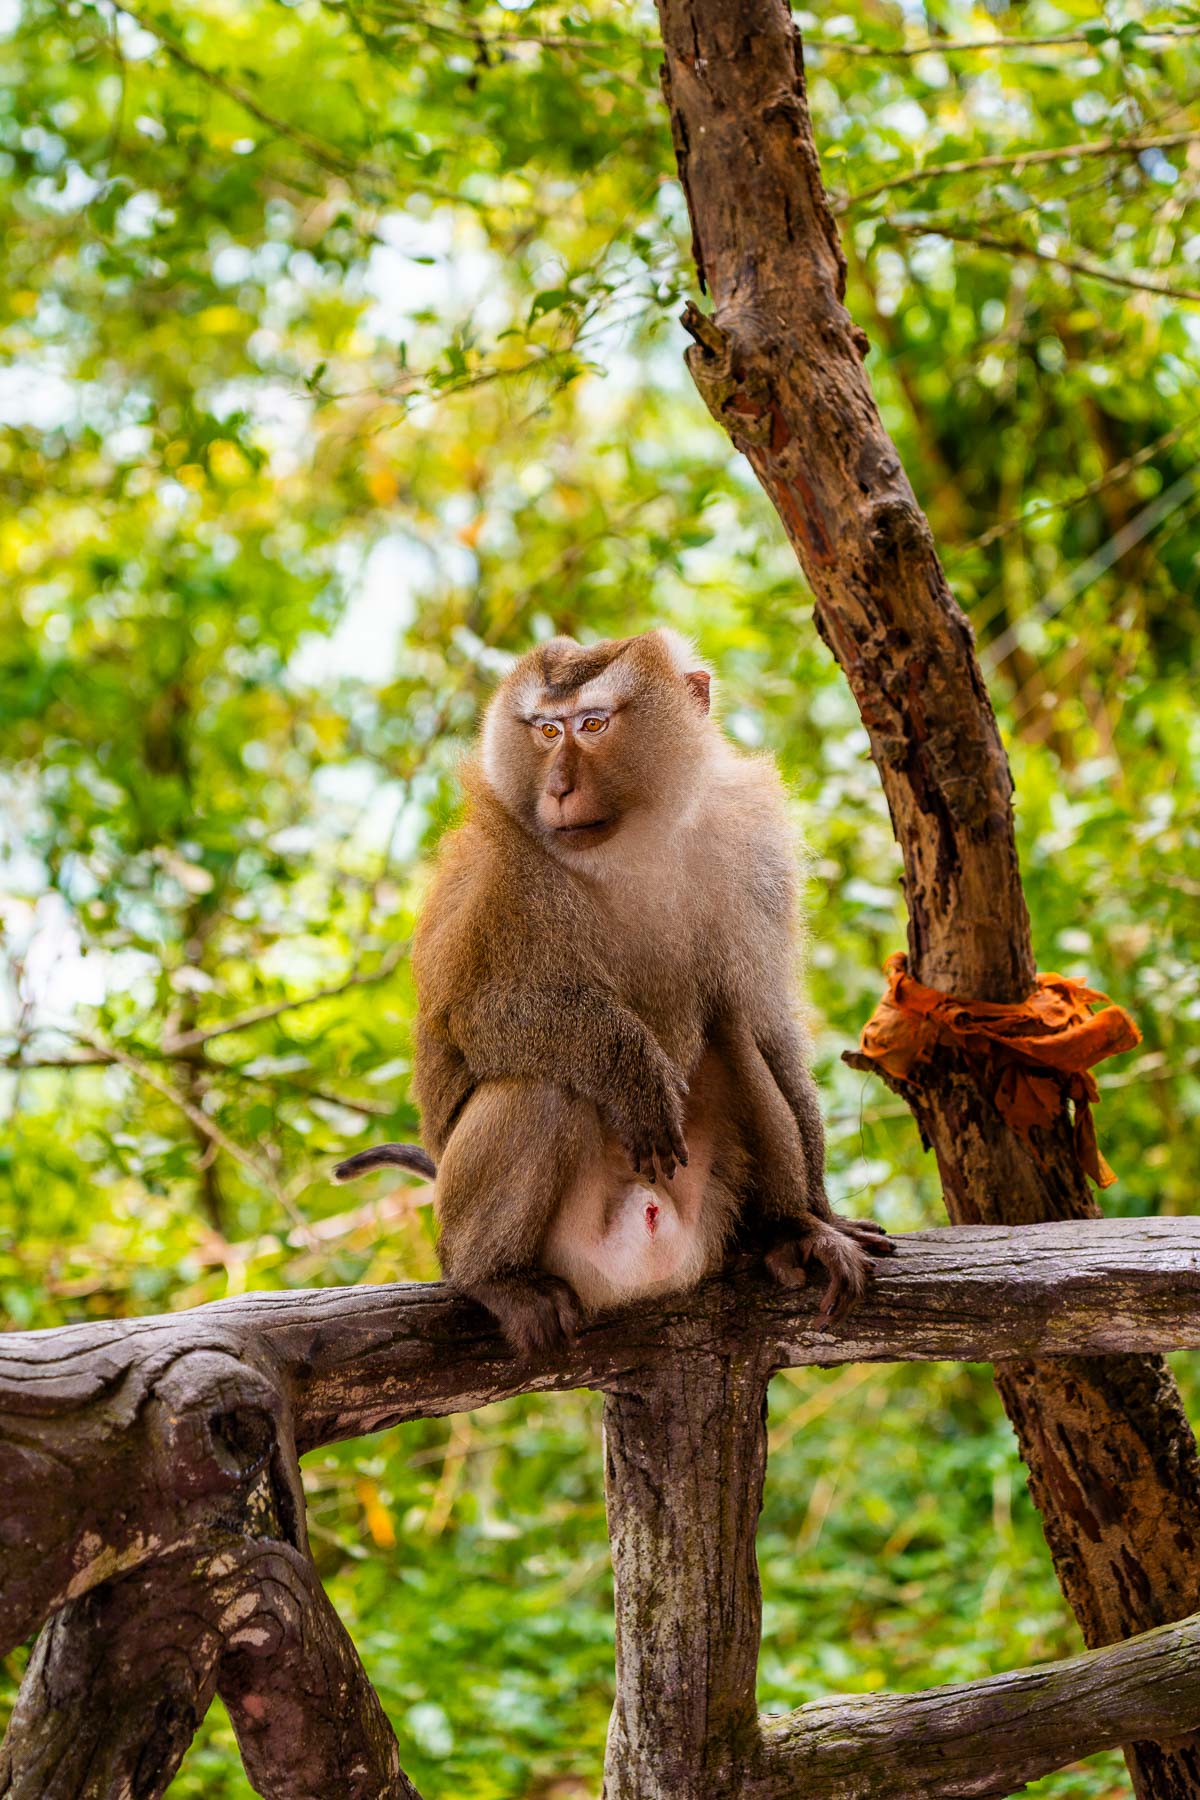 Monkey at the Big Buddha in Phuket, Thailand